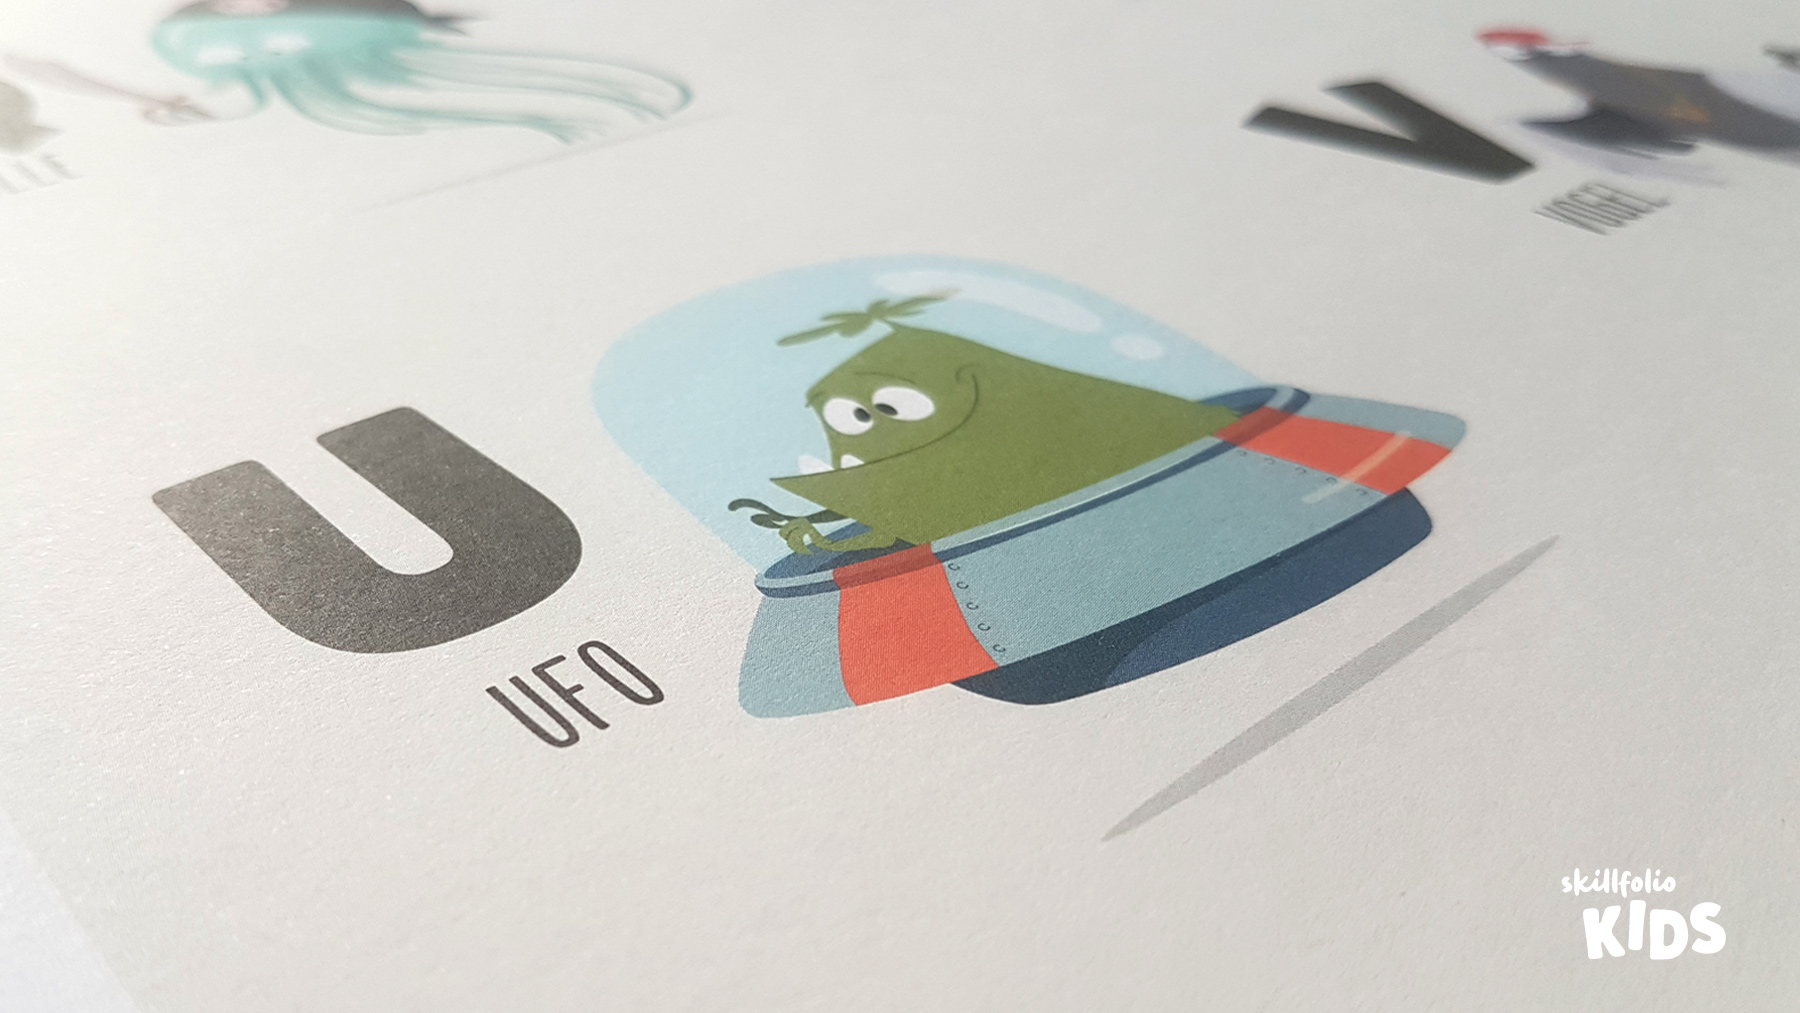 Ein Ausschnitt von "Das ABC Poster" mit Ufo und Alien